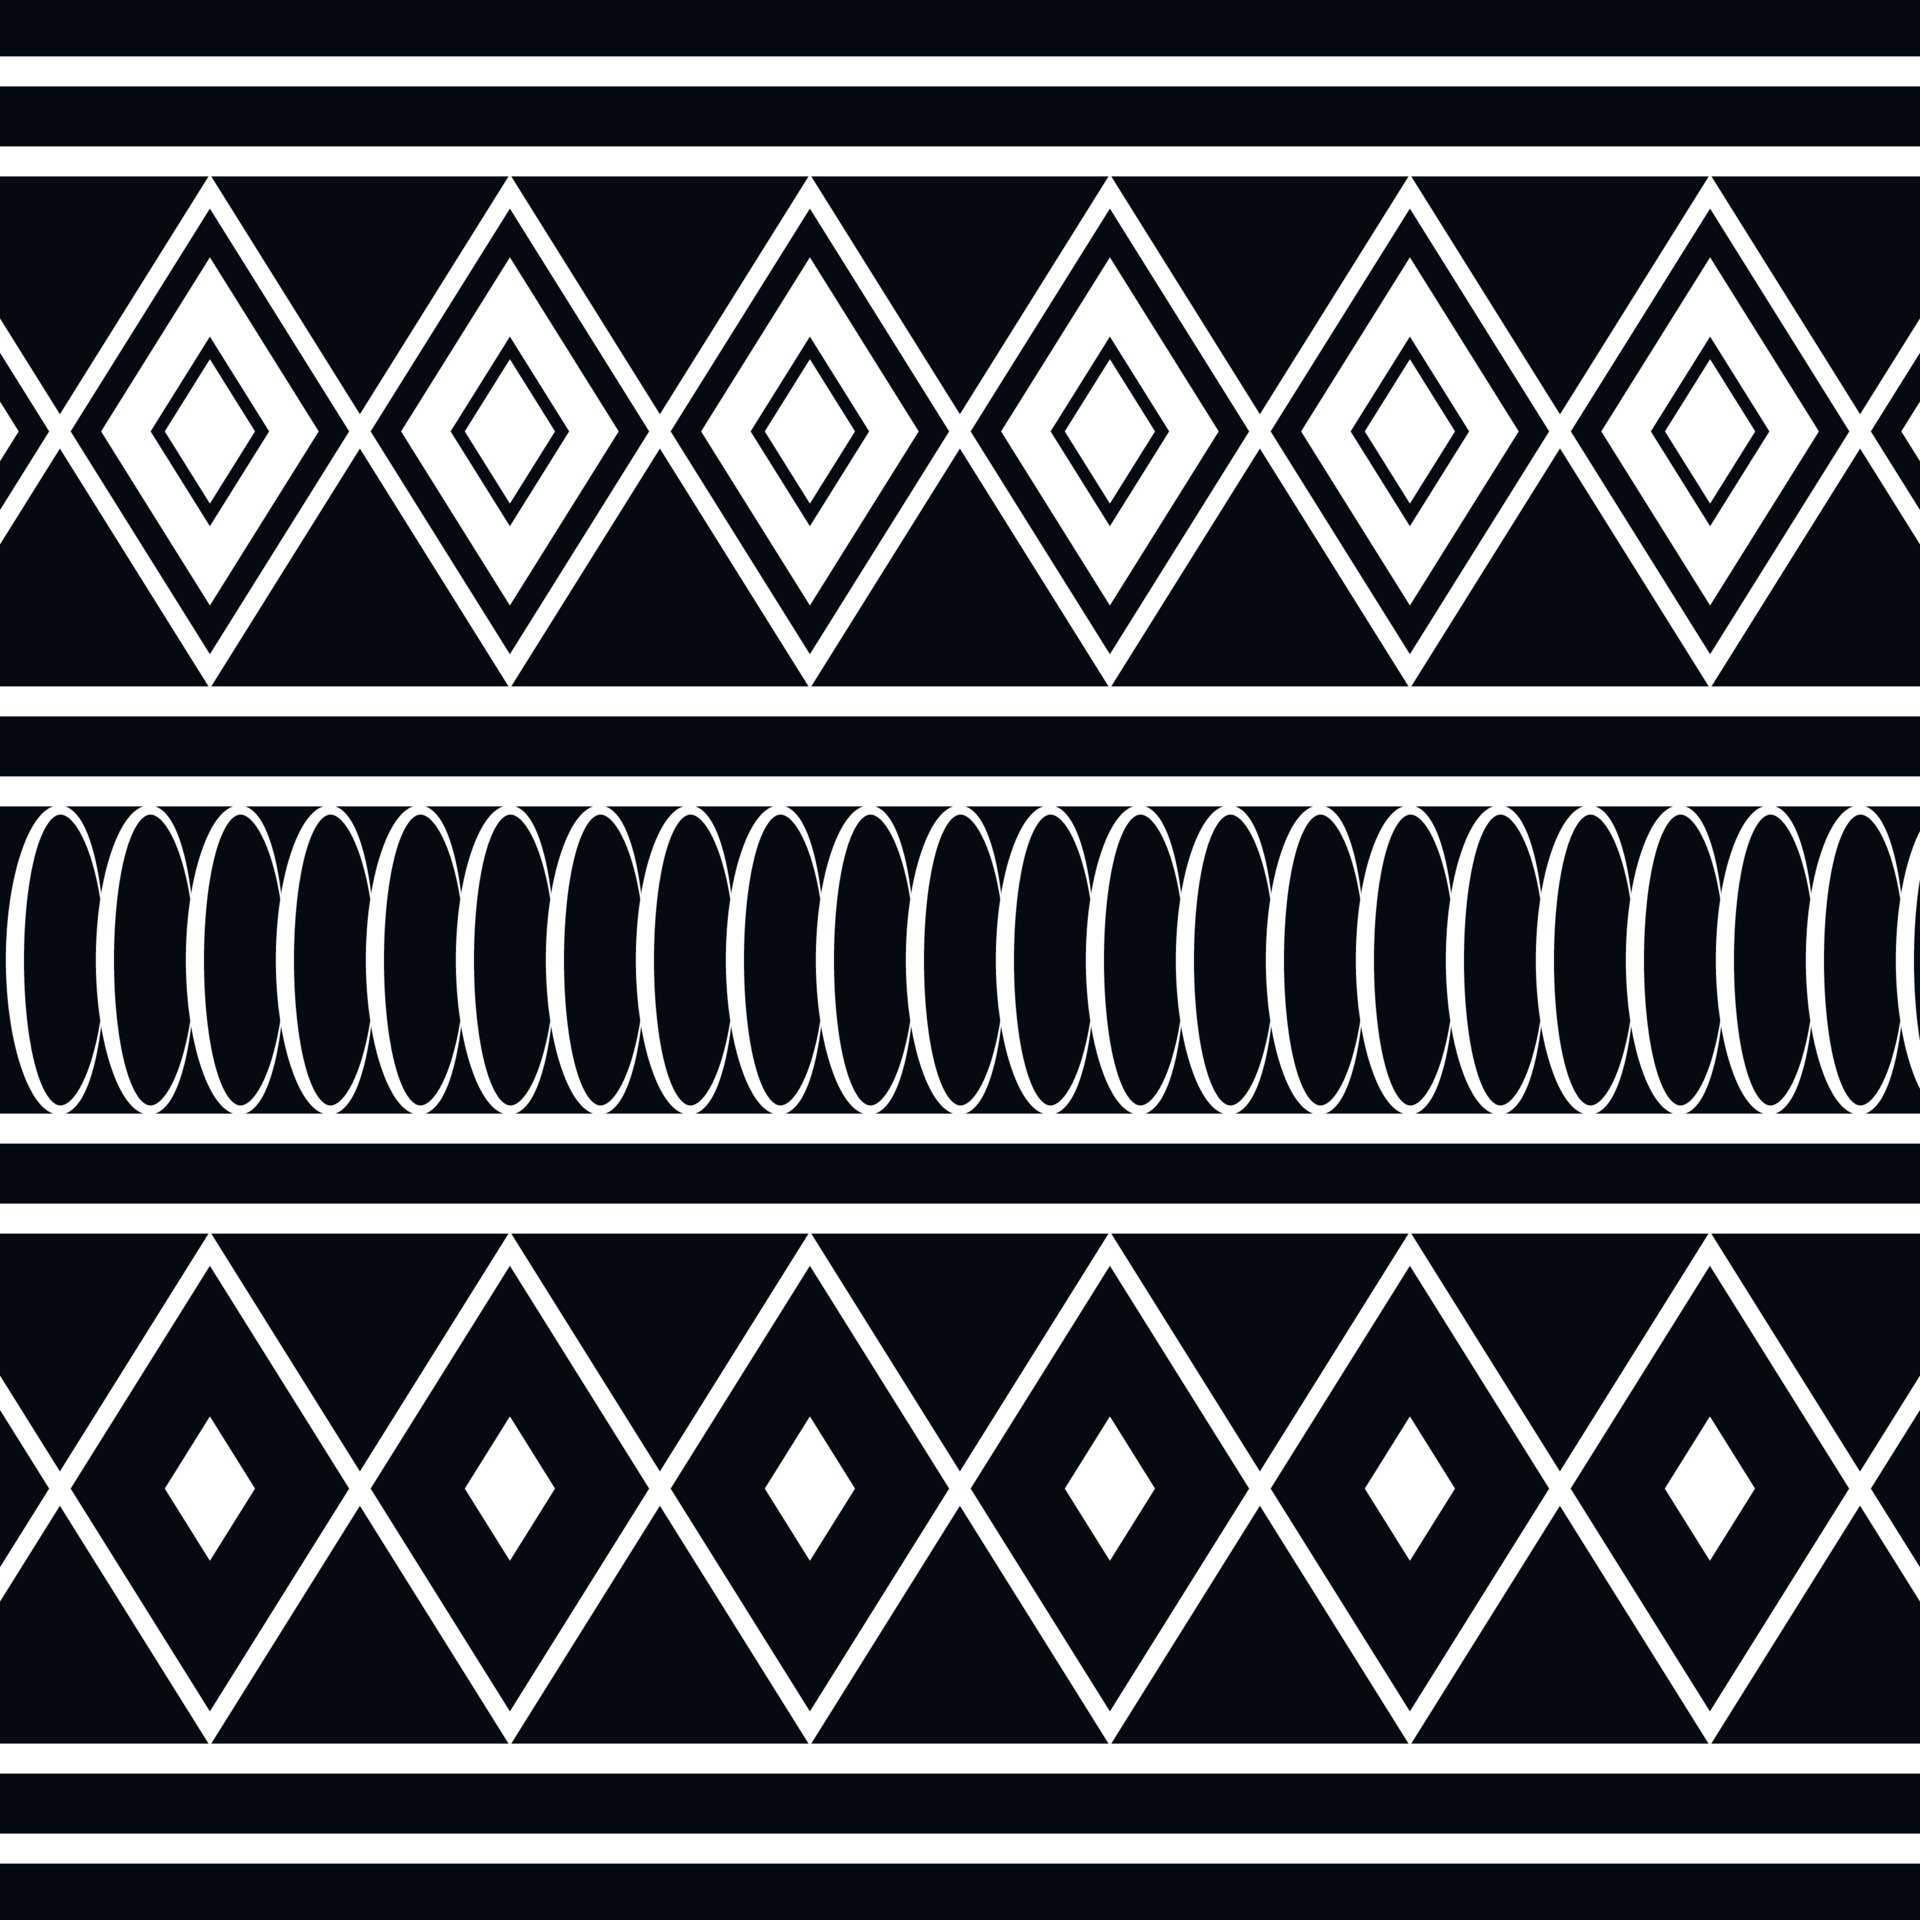 Nghệ thuật truyền thống của Papua New Guinea rất đặc sắc và phong phú. Từ các mô hình bản địa dân tộc cho đến các trang phục truyền thống, tất cả đều thể hiện sự đa dạng và độc đáo của dân tộc Papua. Xem những hình ảnh về nghệ thuật truyền thống nơi đây sẽ giúp bạn thêm hiểu biết và yêu thích nền văn hóa này.